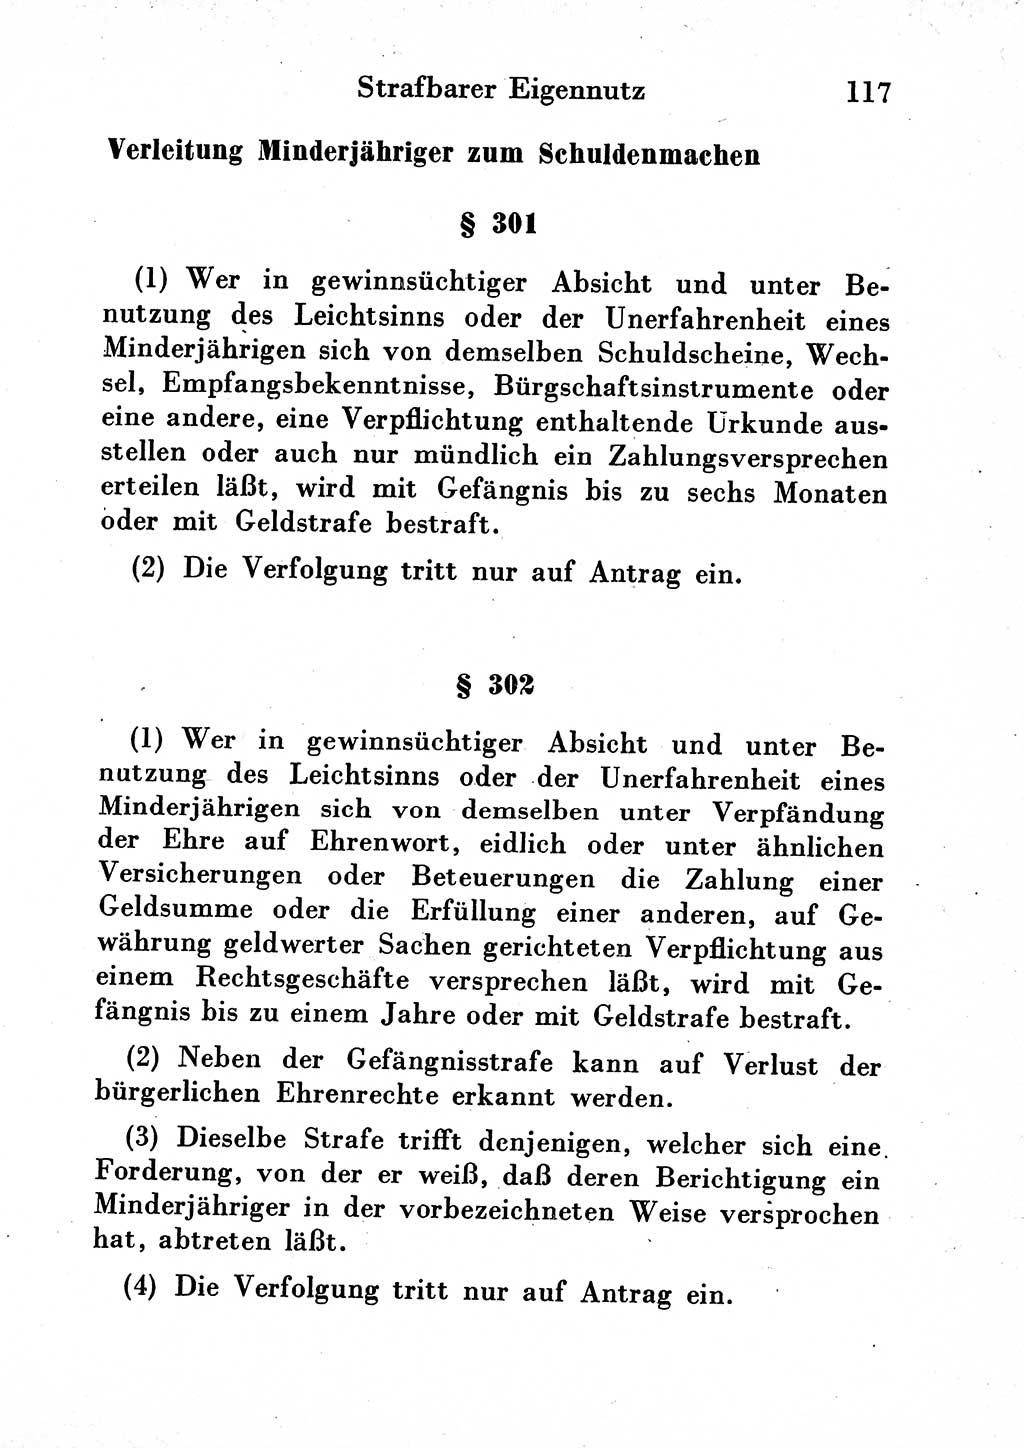 Strafgesetzbuch (StGB) und andere Strafgesetze [Deutsche Demokratische Republik (DDR)] 1954, Seite 117 (StGB Strafges. DDR 1954, S. 117)